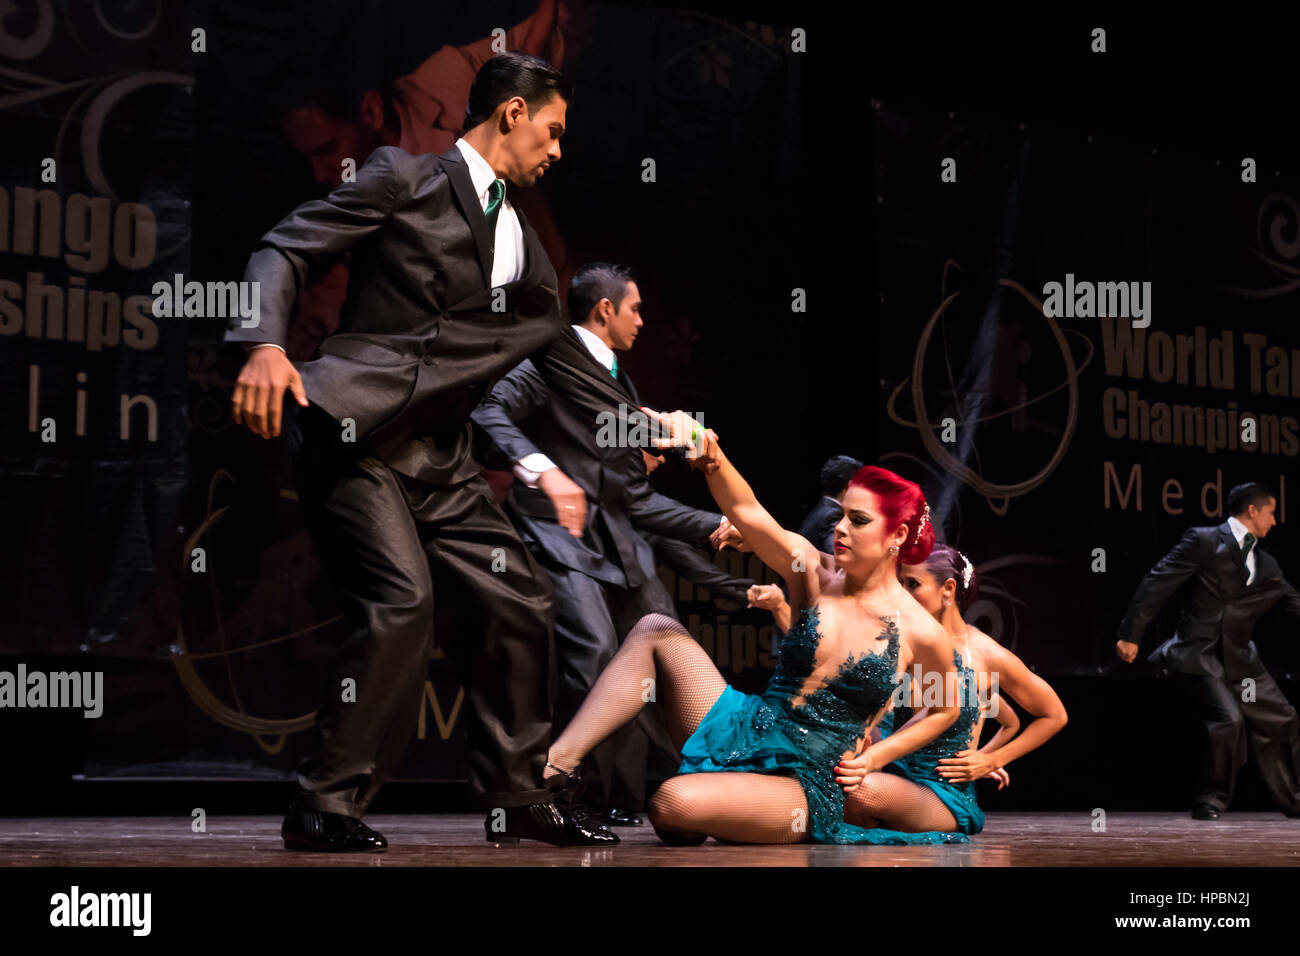 Groupe de danse de Tango dans le monde Championnats du tango, danse de la concurrence dans l'International Tango Festival 2016. Medellin, Colombie. Banque D'Images